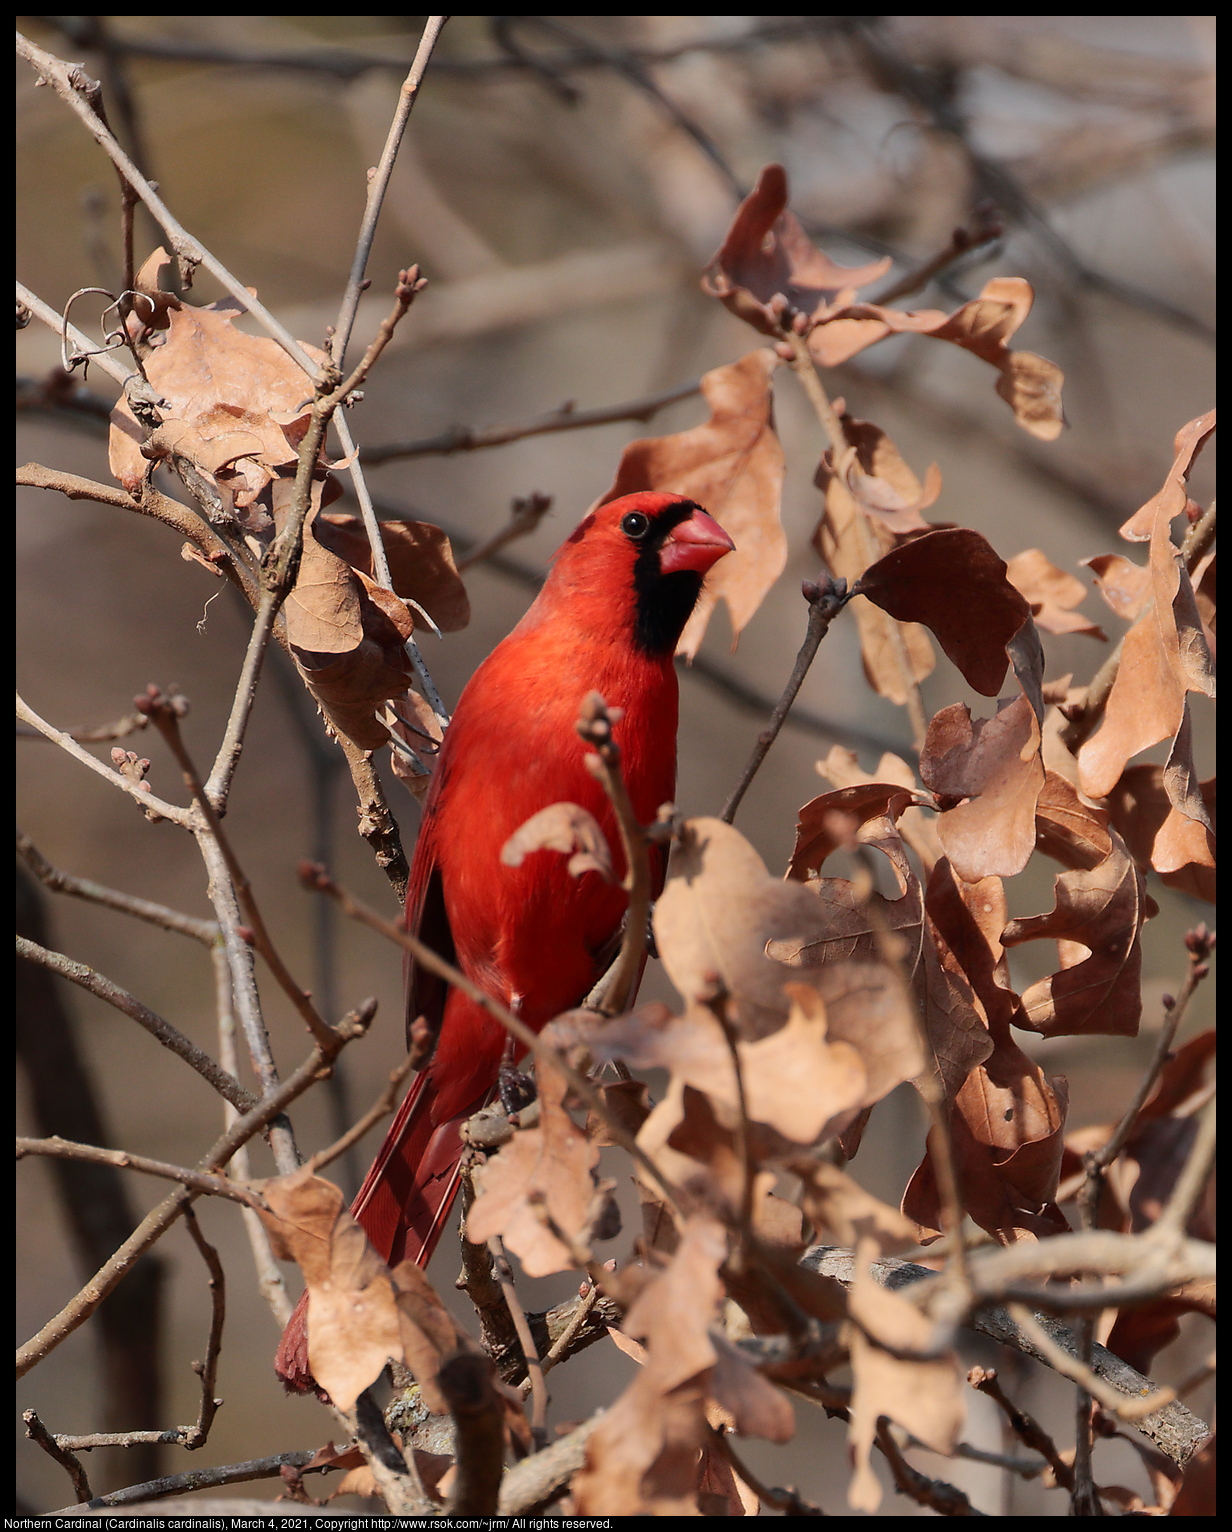 Northern Cardinal (Cardinalis cardinalis), March 4, 2021